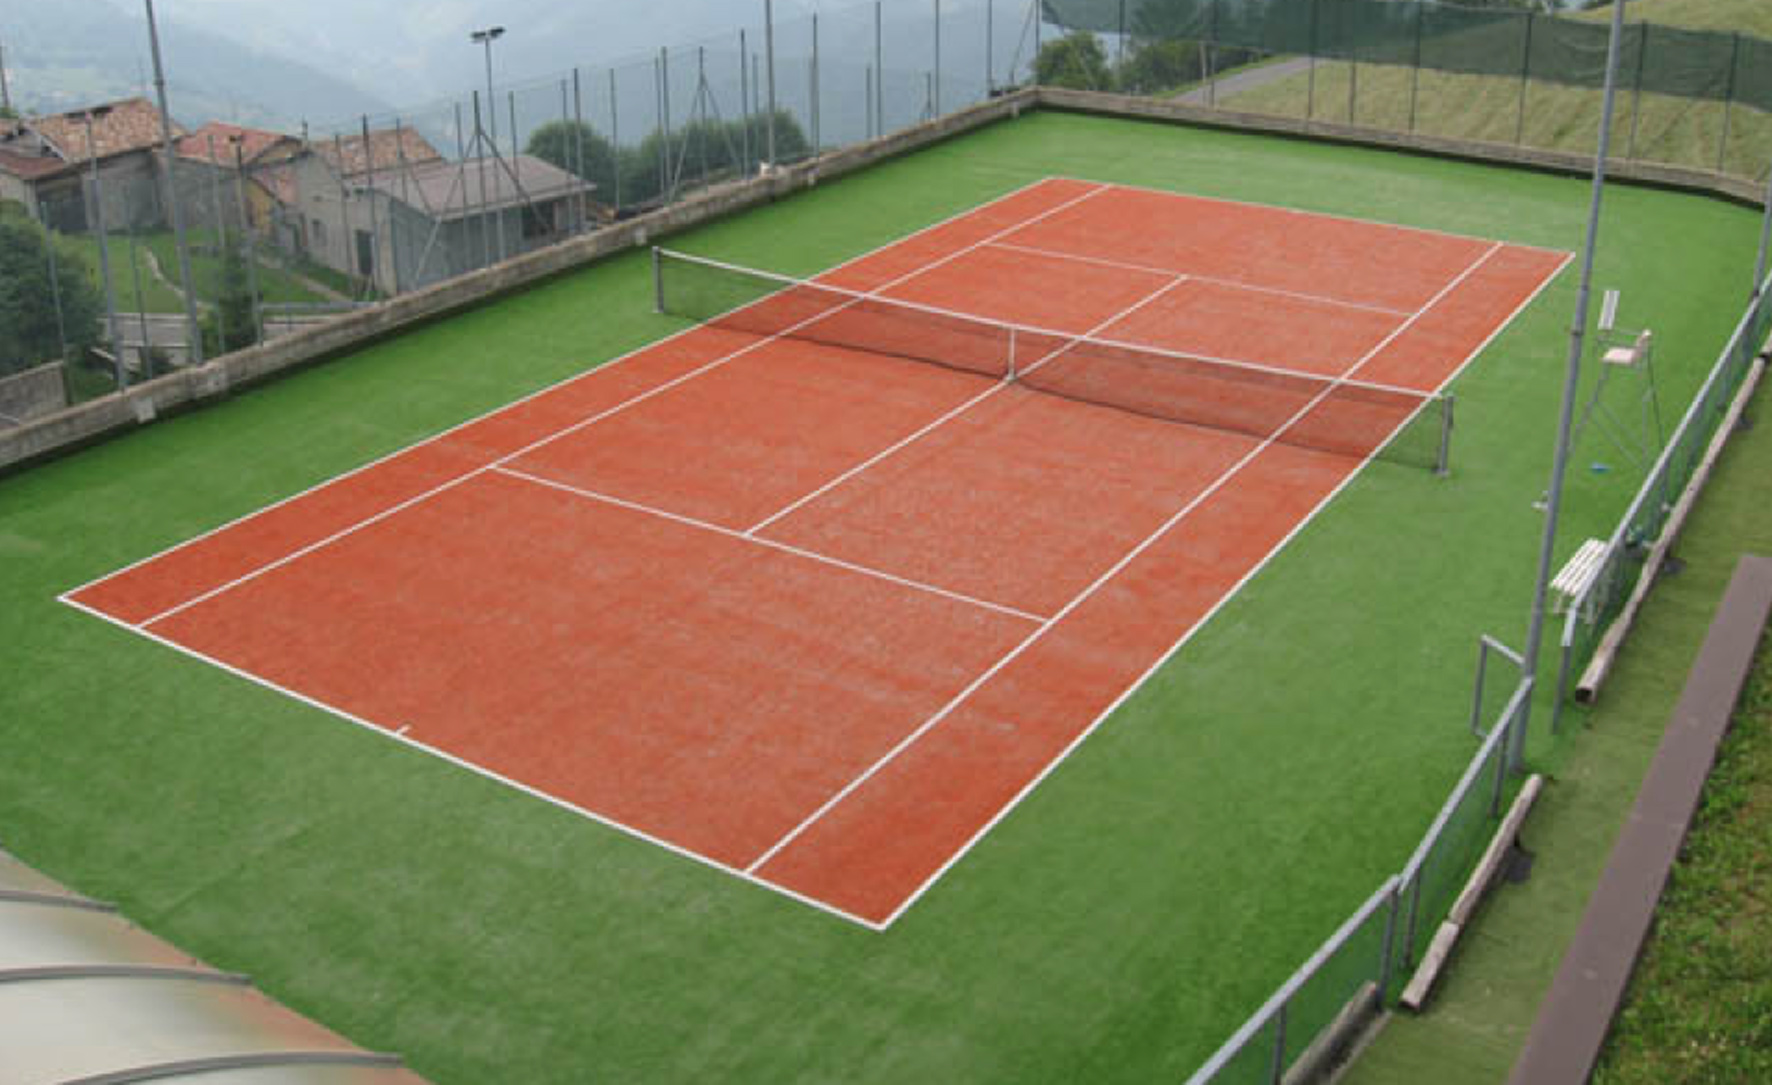 Какое поле теннисный. Теннисный корт 36х18. M’Istra’l теннисный корт. Юнусабадский теннисный корт. Разуклонка теннисного корта.